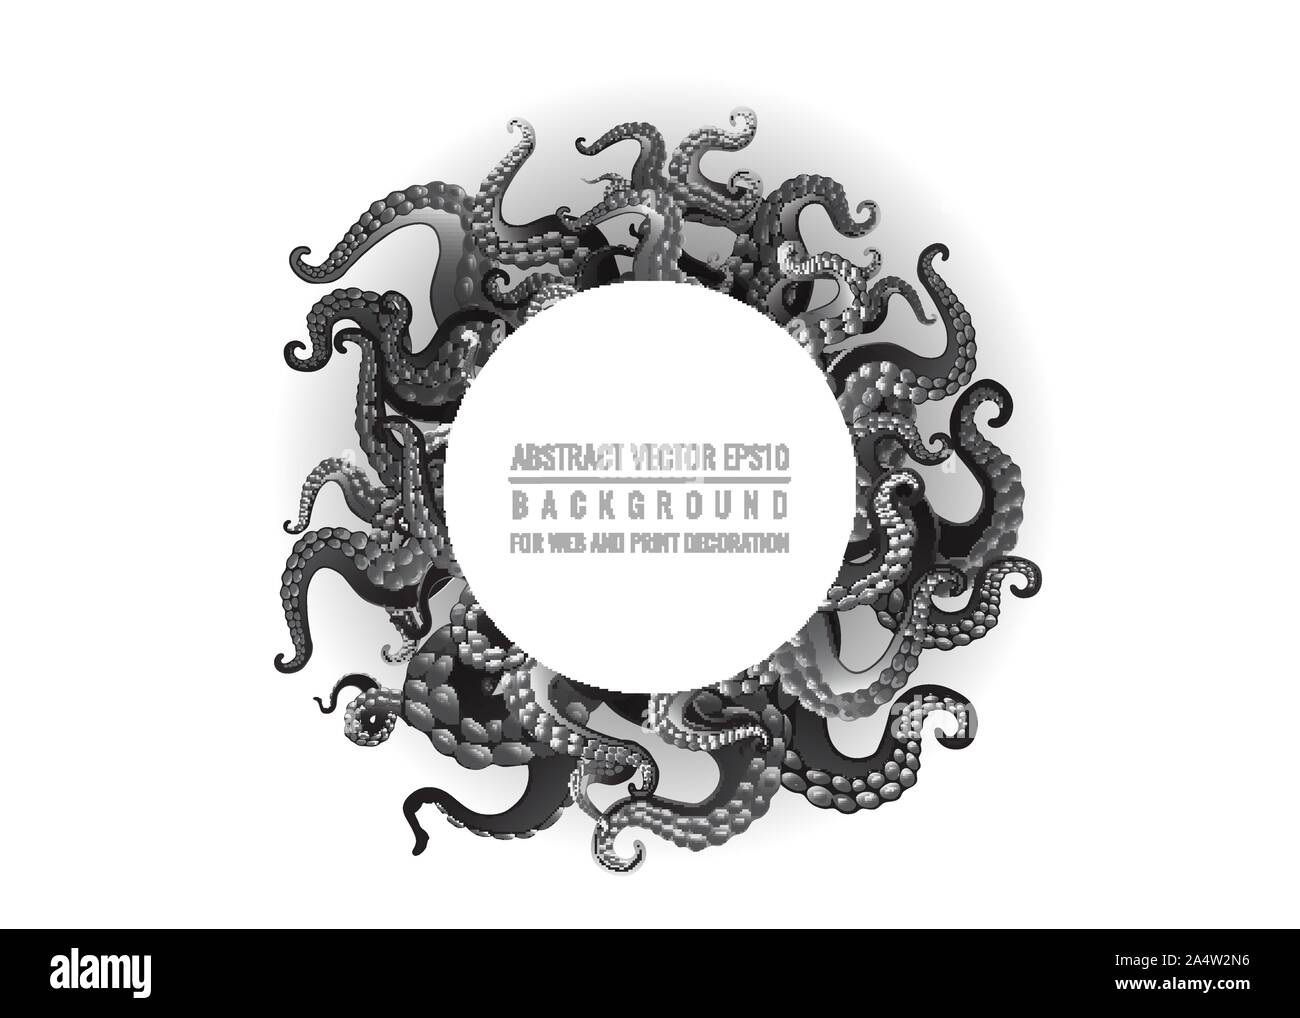 Futuristico con sfondo bianco e nero tentacoli di un polipo frame, motivo Oceano flat Cartoon carino illustrazione per il web e la stampa, carino composizioni Illustrazione Vettoriale